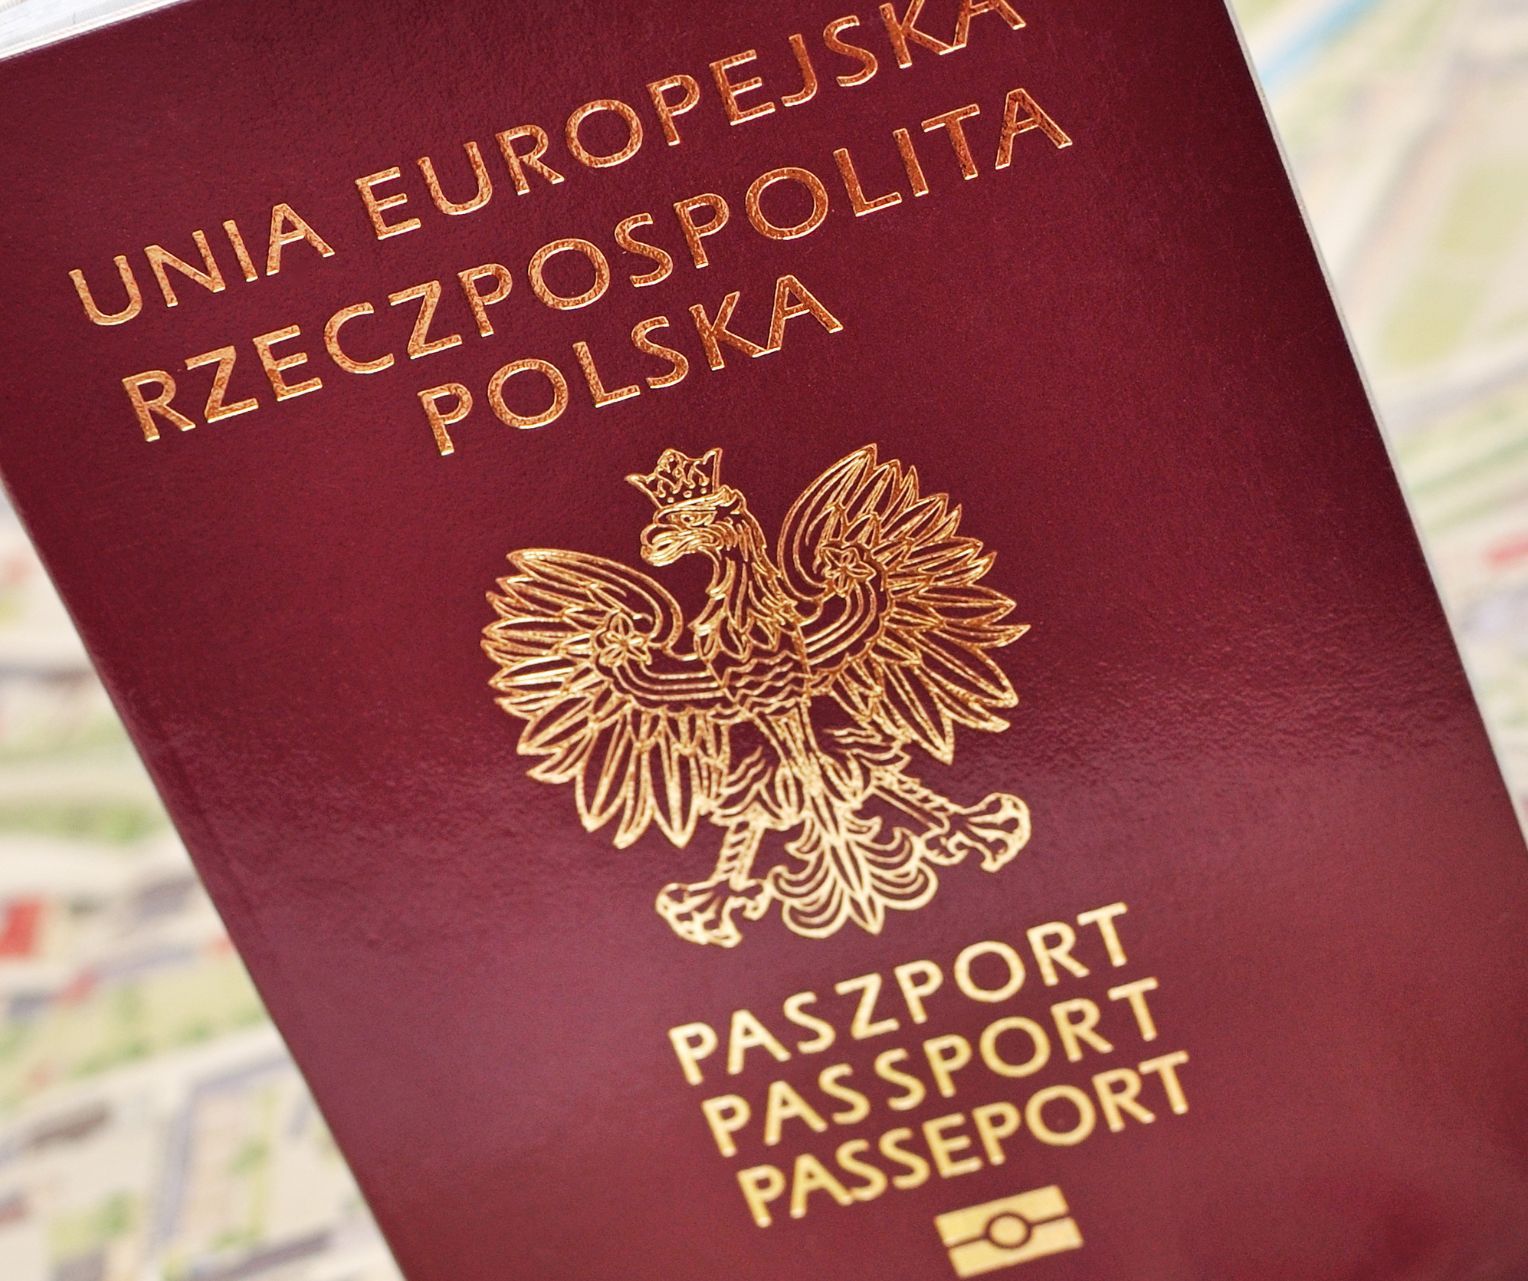 Paszport bordowy Polski